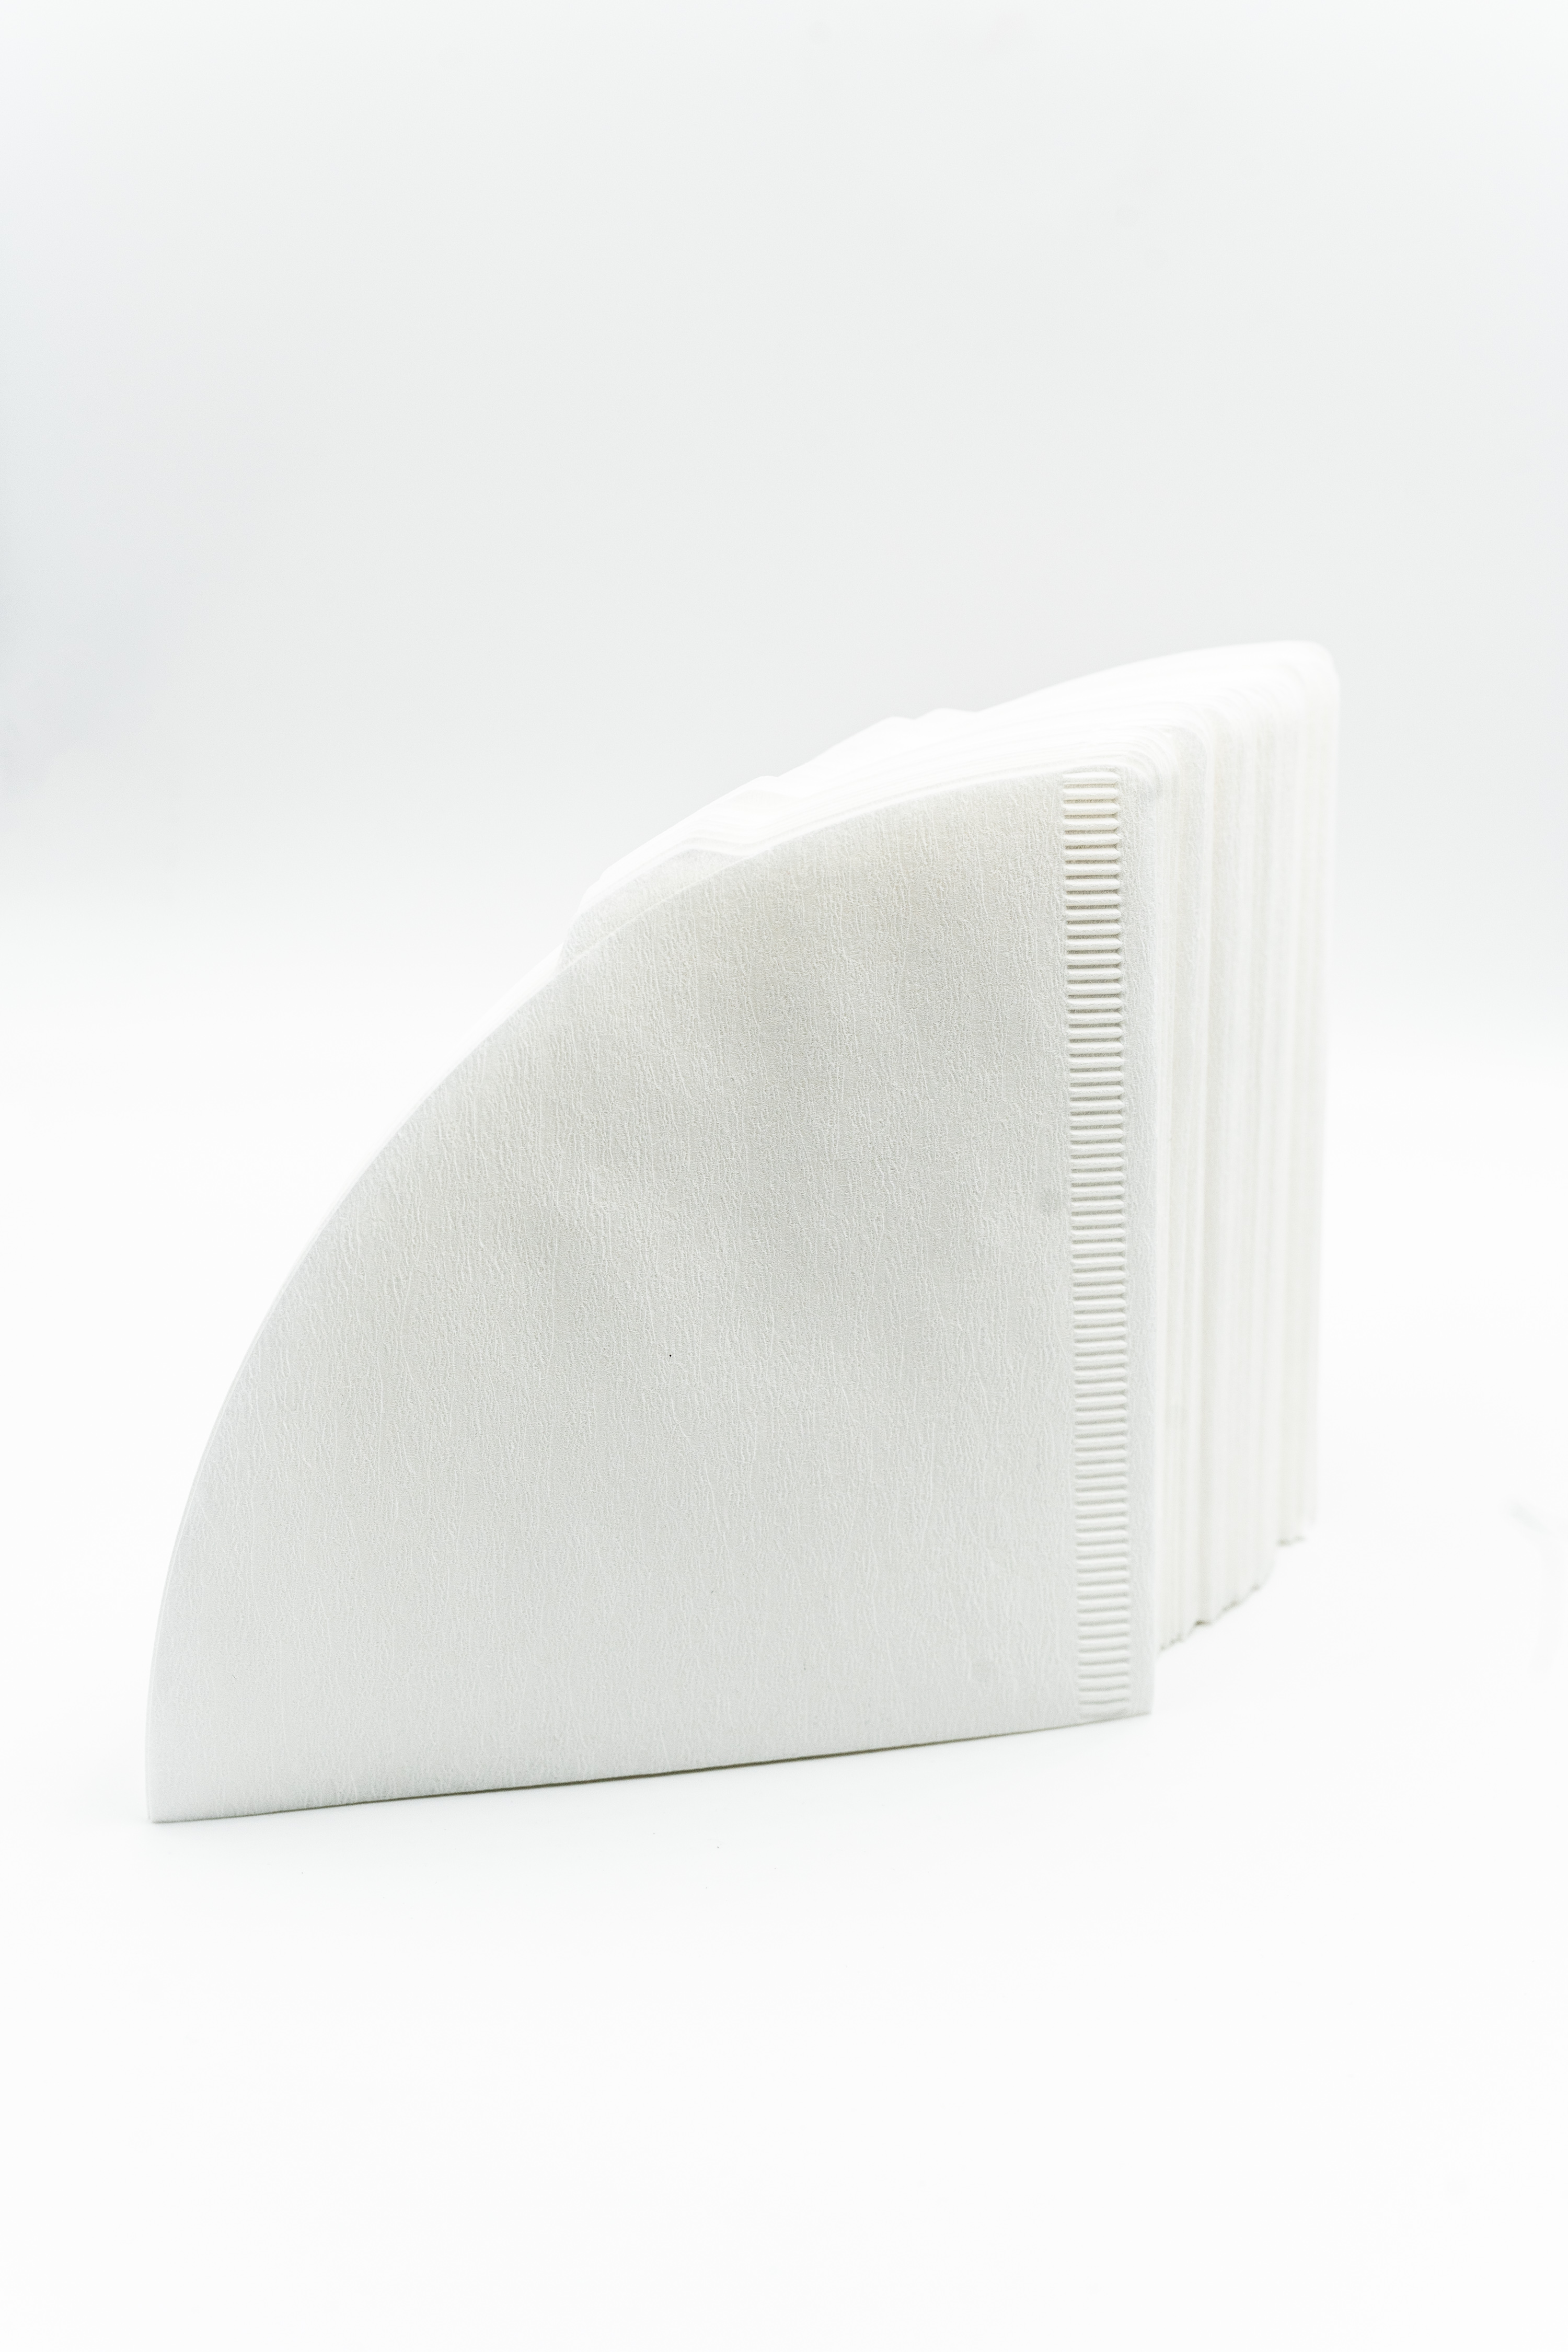 Hario Papierfilter weiß 02 für Hand-Kaffeefilter | Dripper V60 Größe 02 (100 Stück)